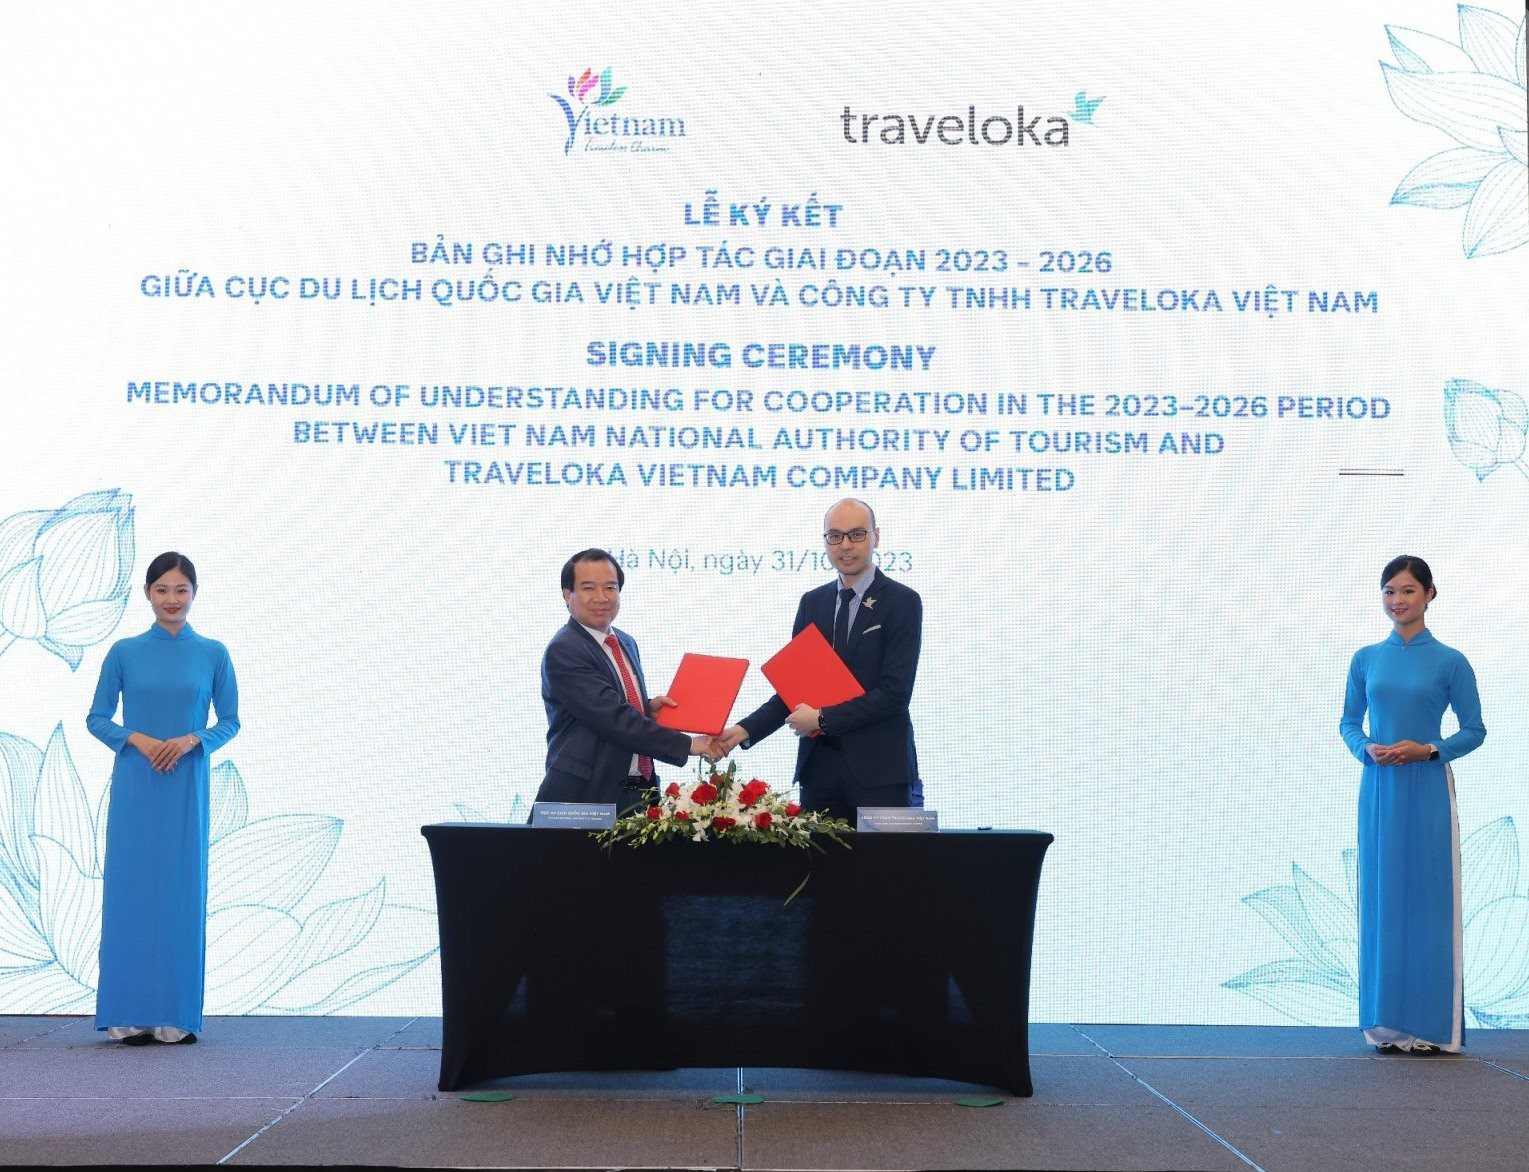 Traveloka "bắt tay" hợp tác Cục Du lịch Quốc gia Việt Nam, quảng bá du lịch địa phương và nâng tầm vị thế "điểm đến toàn cầu"  